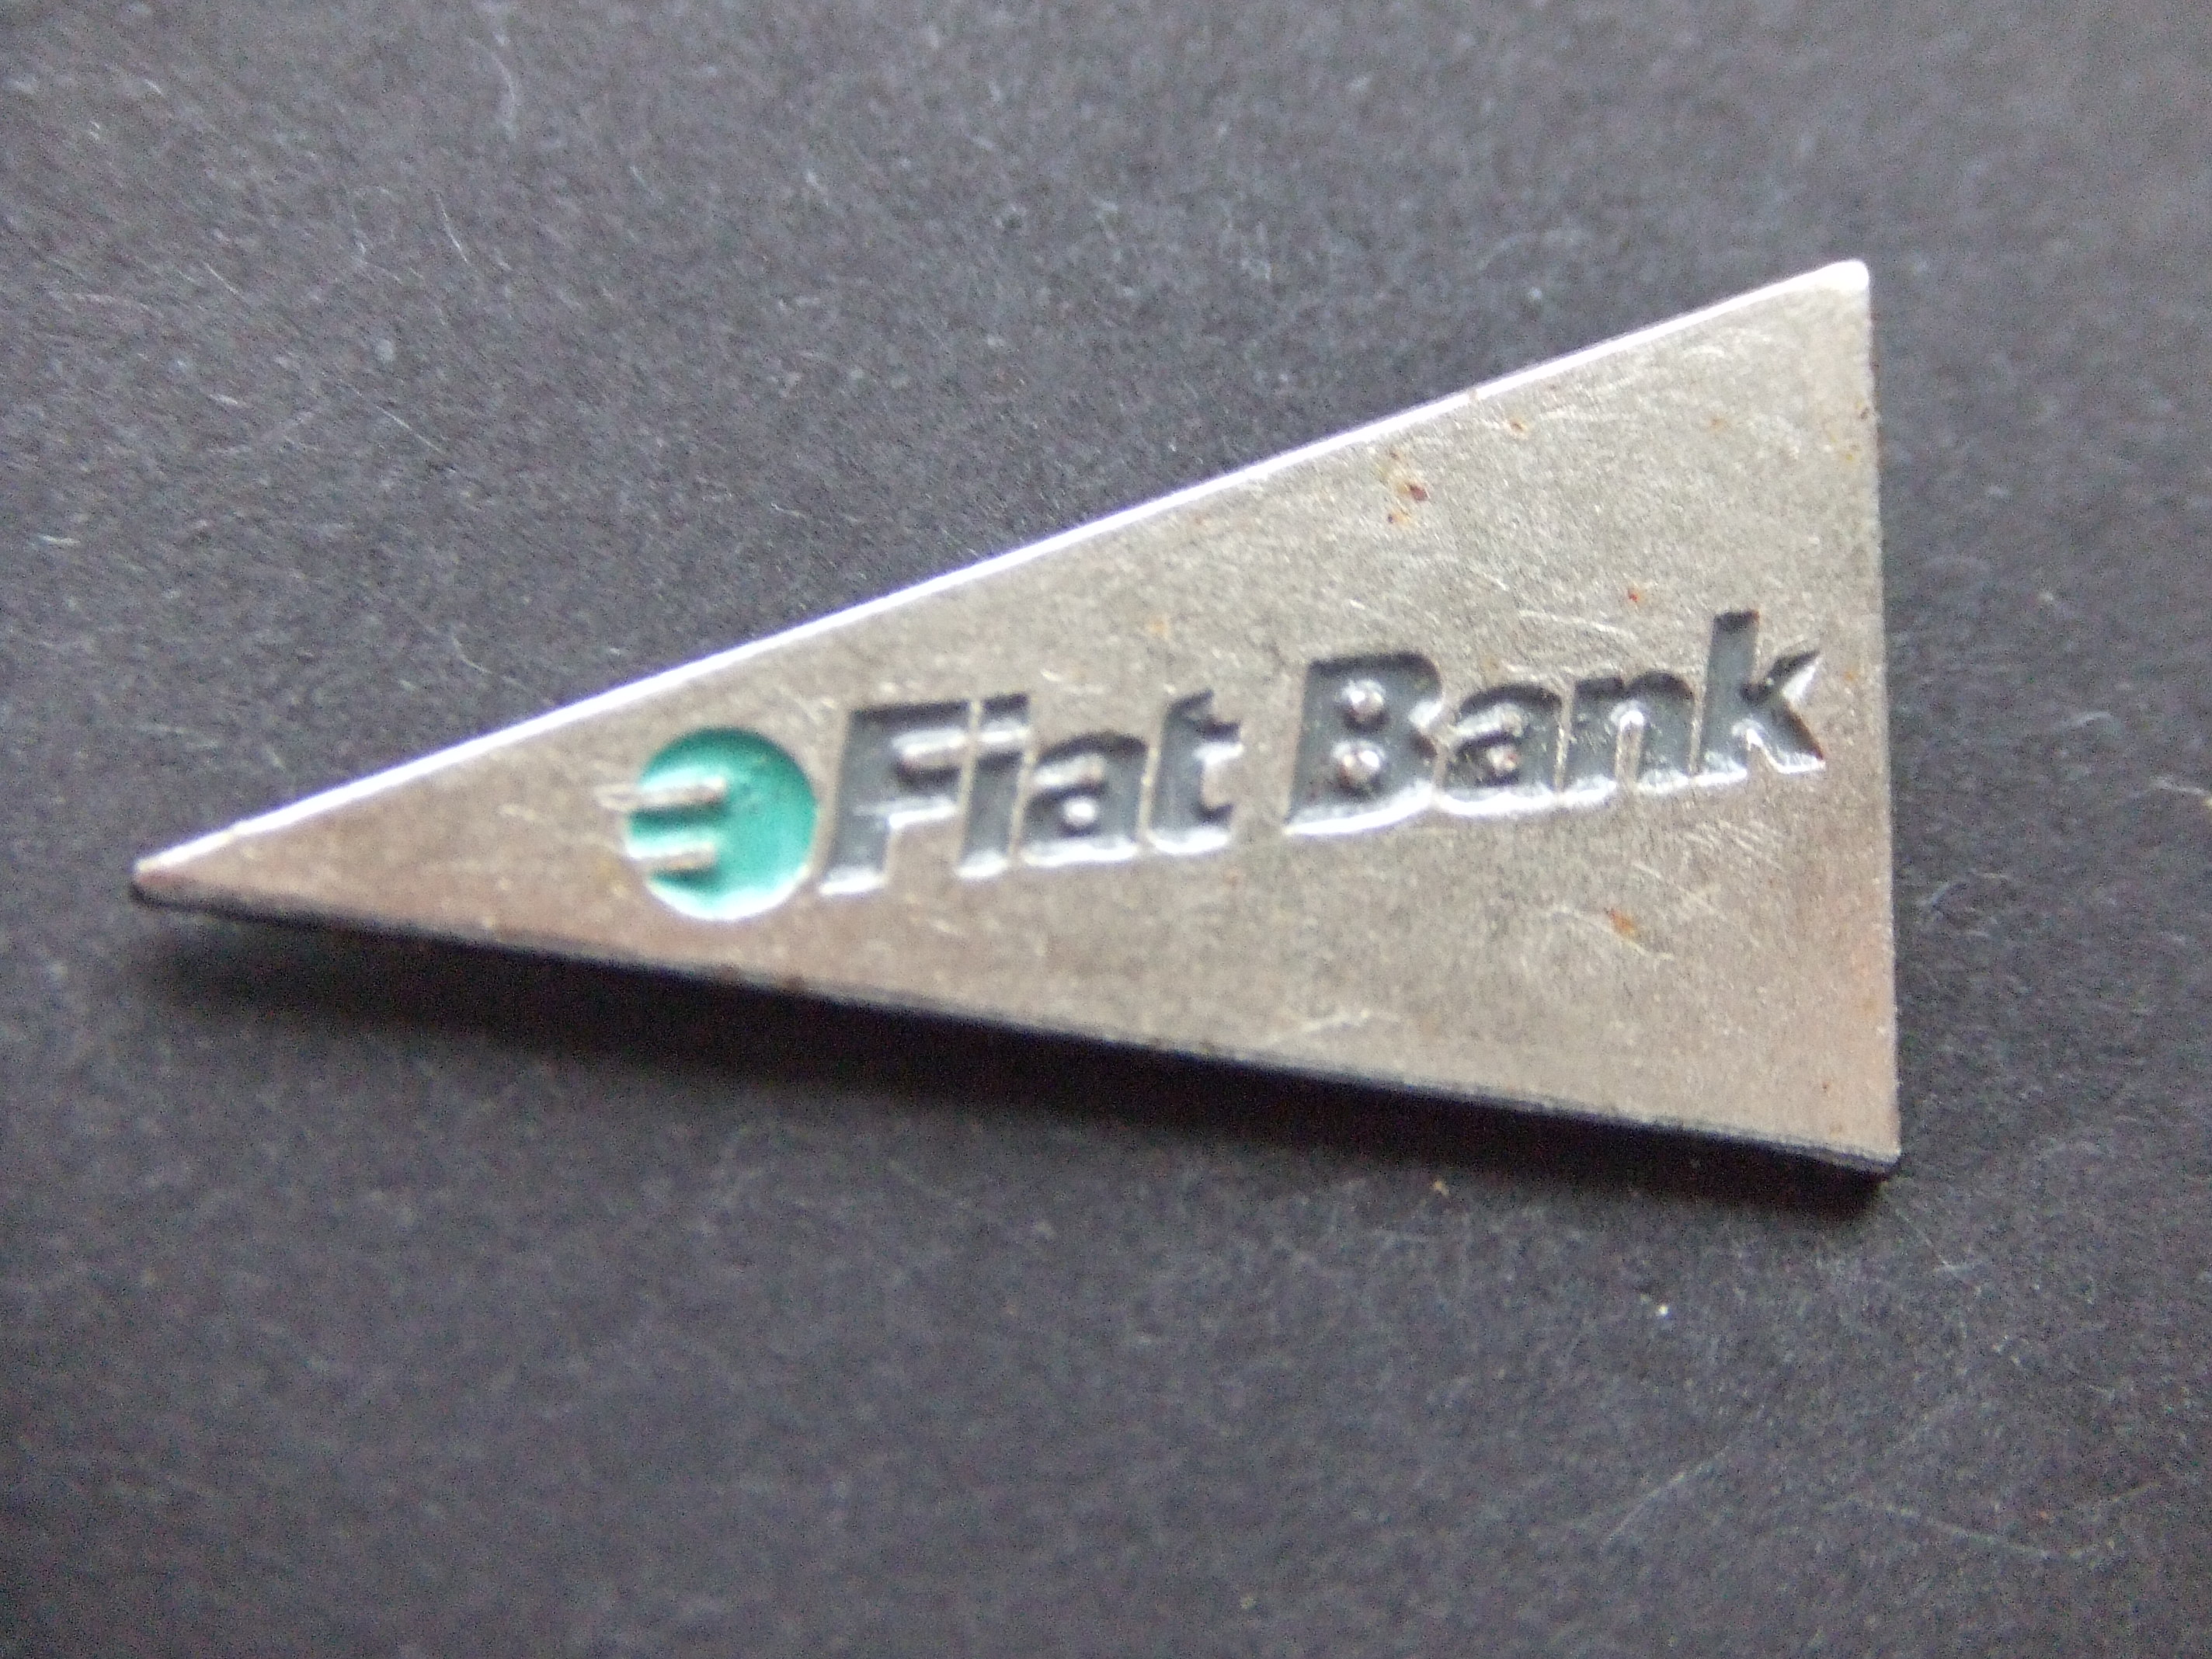 Fiat Bank zilverkleurige